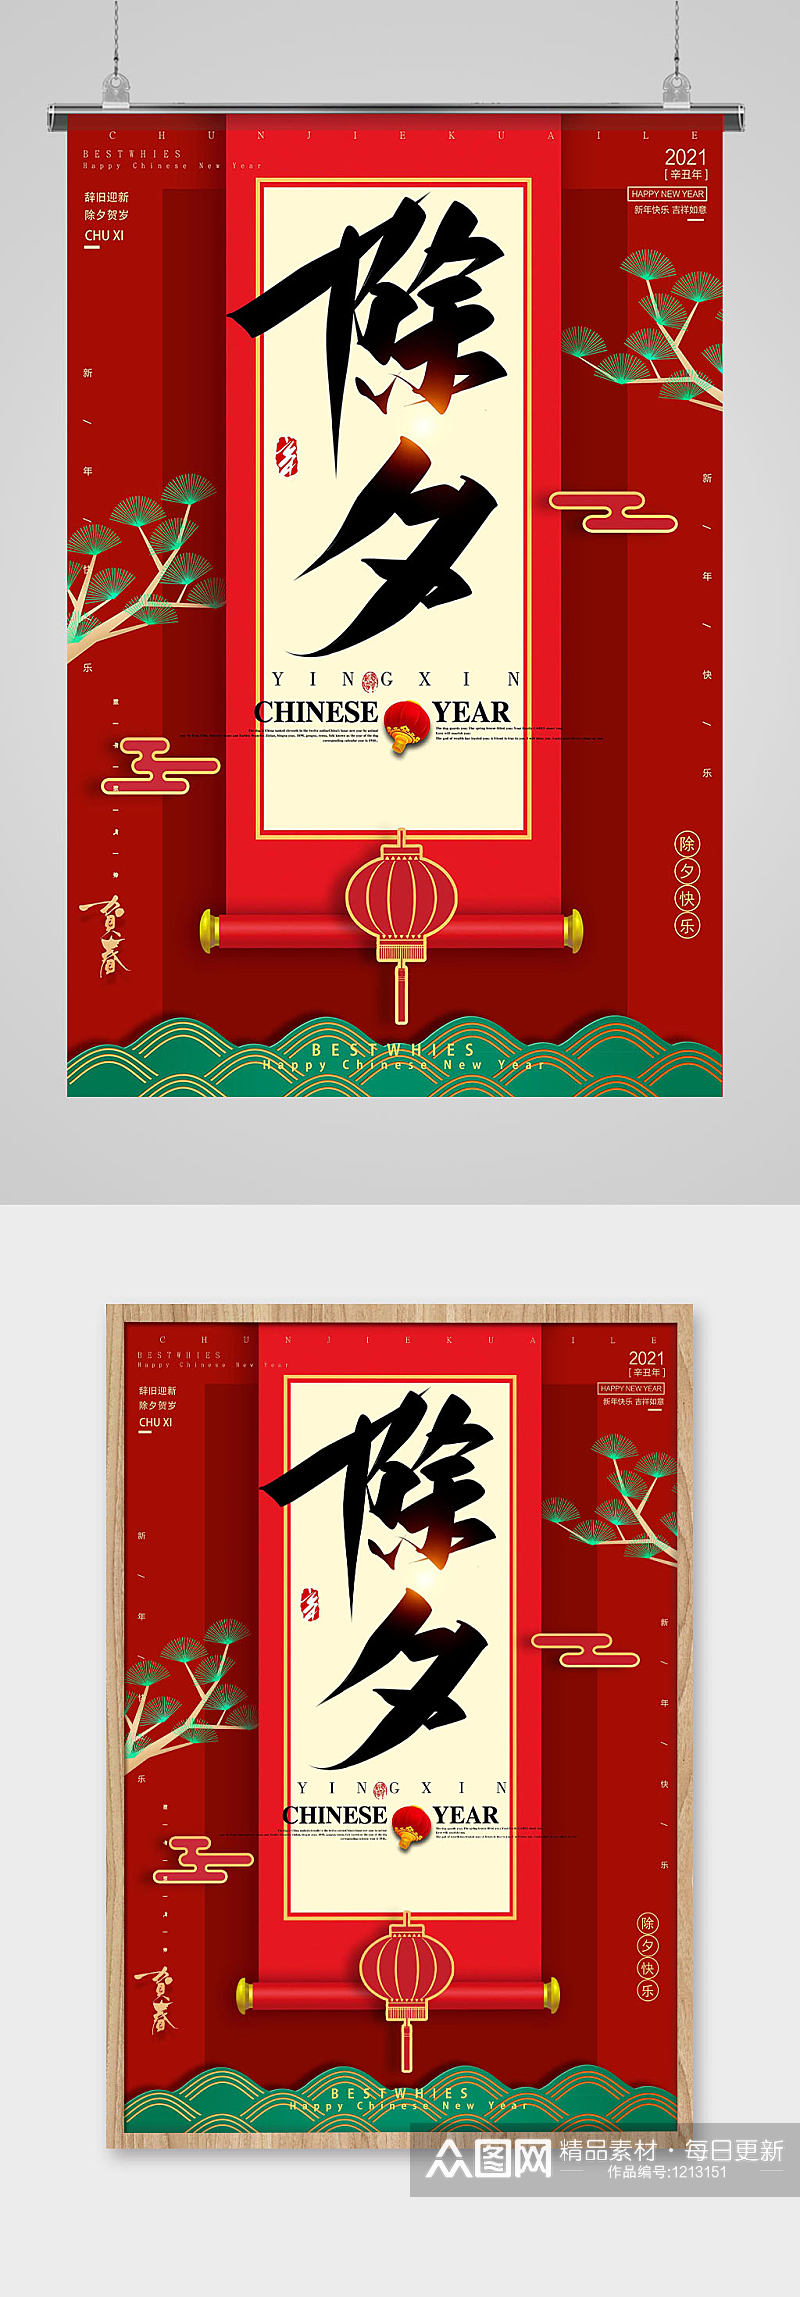 毛笔艺术字中国传统除夕节日海报素材